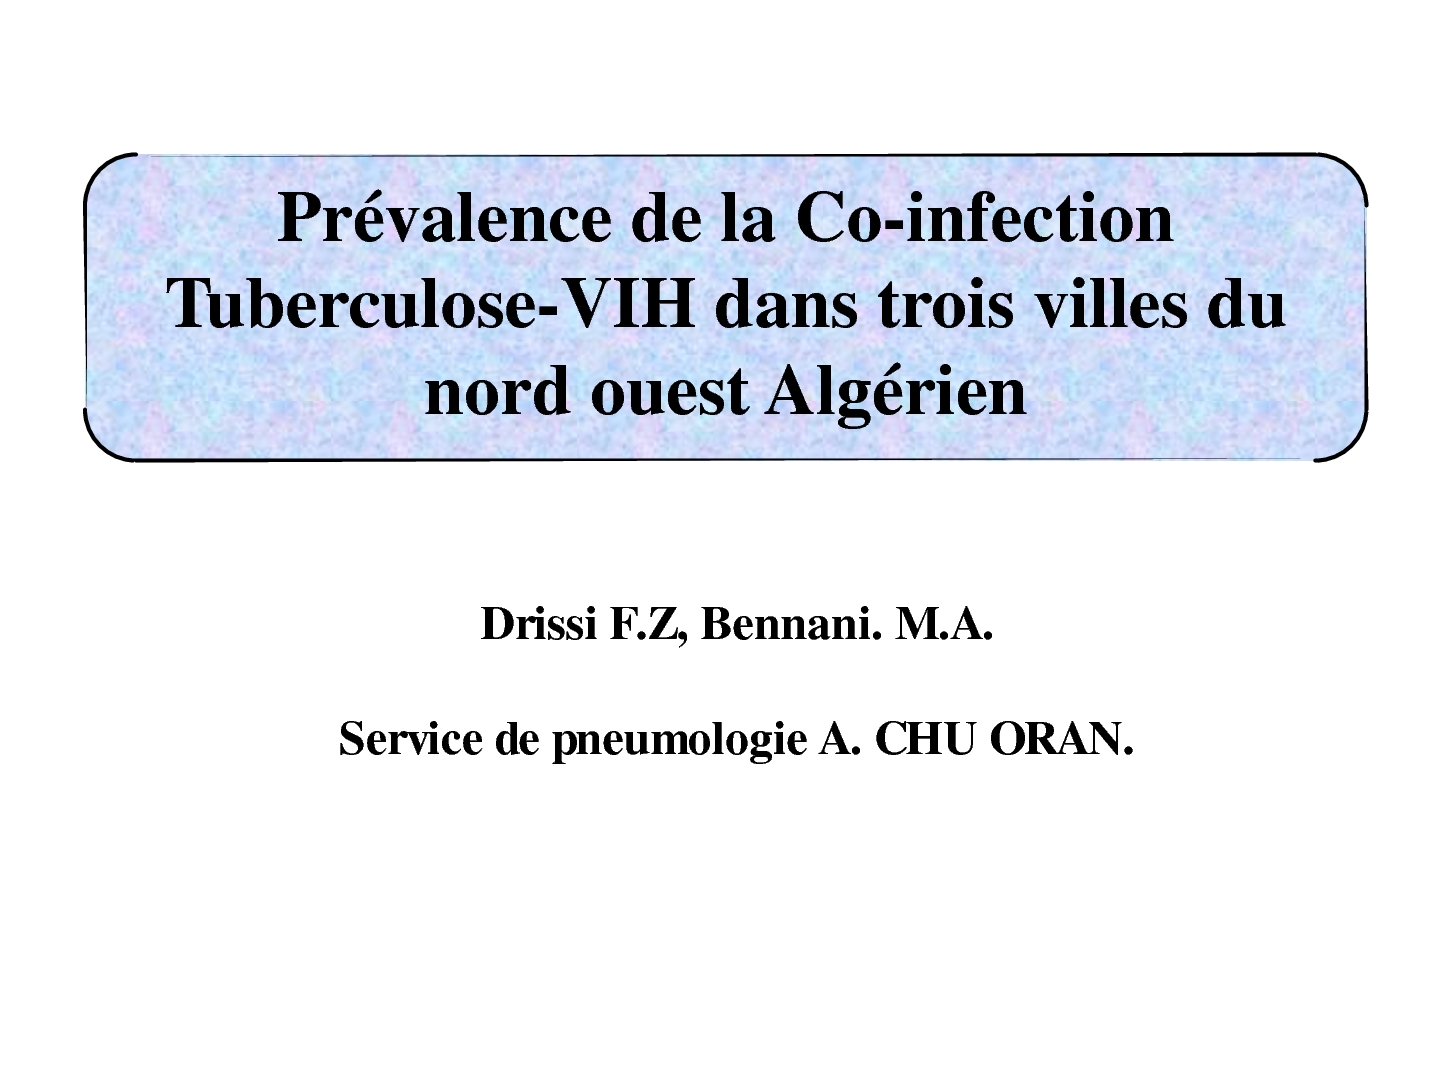 Prévalence de la Co-infection Tuberculose-VIH dans trois villes du nord ouest Algérien.F. Drissi